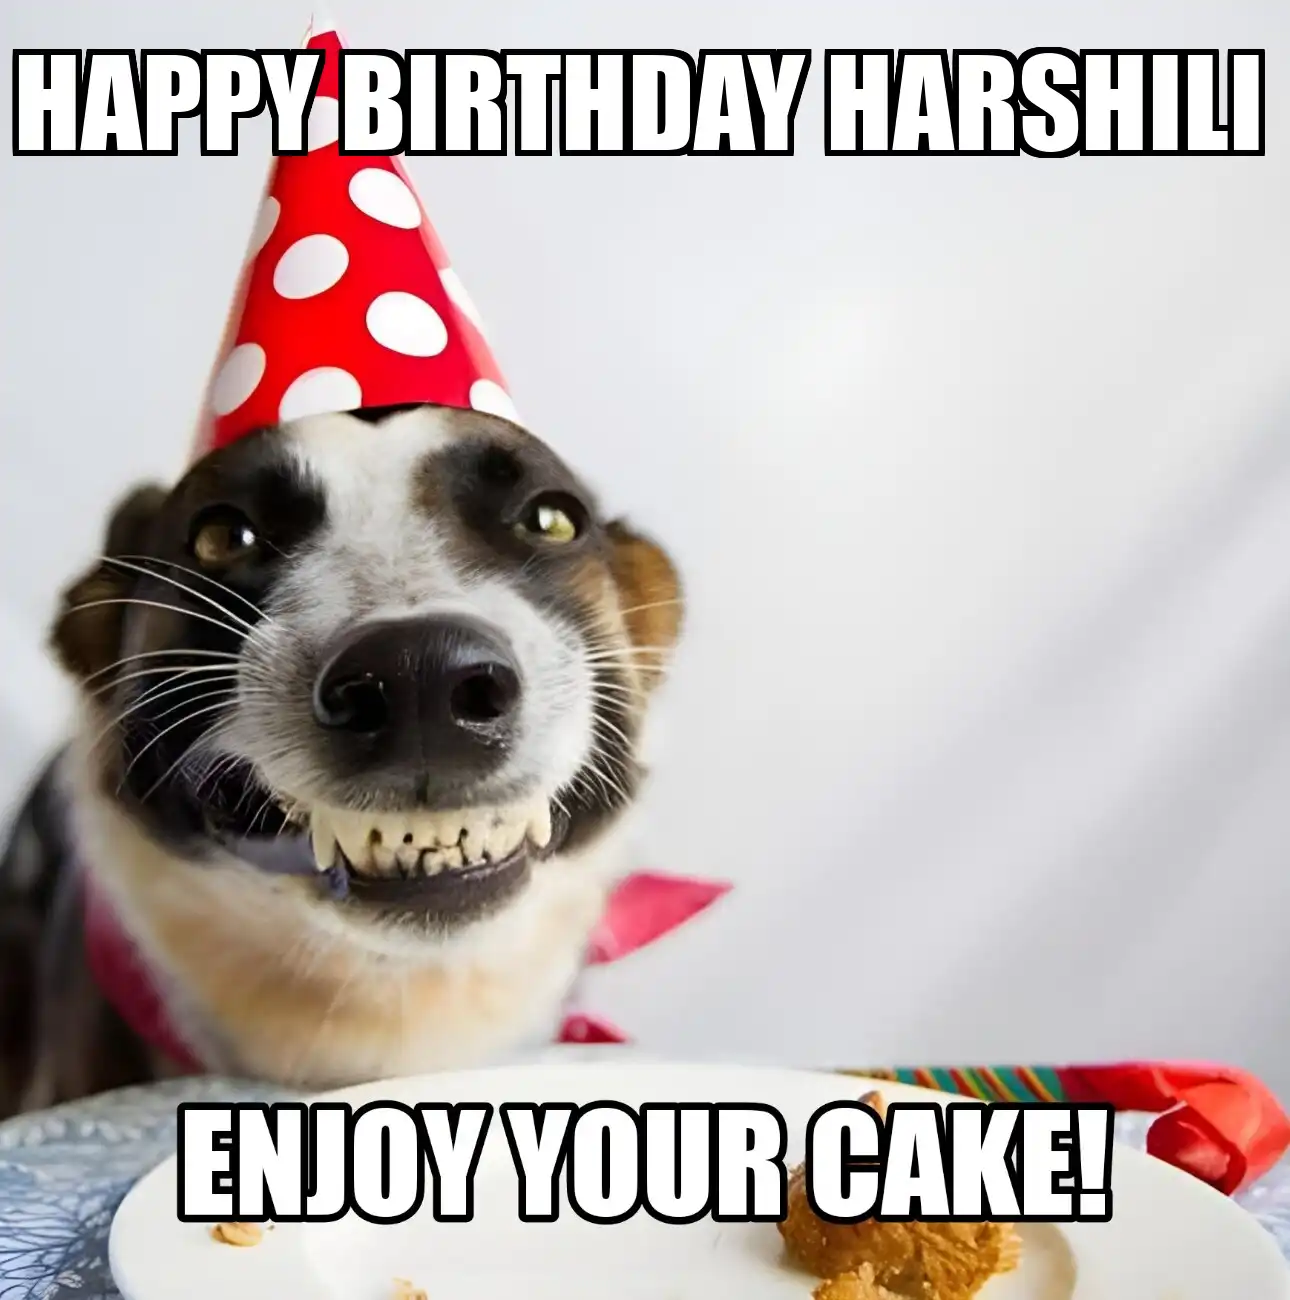 Happy Birthday Harshili Enjoy Your Cake Dog Meme